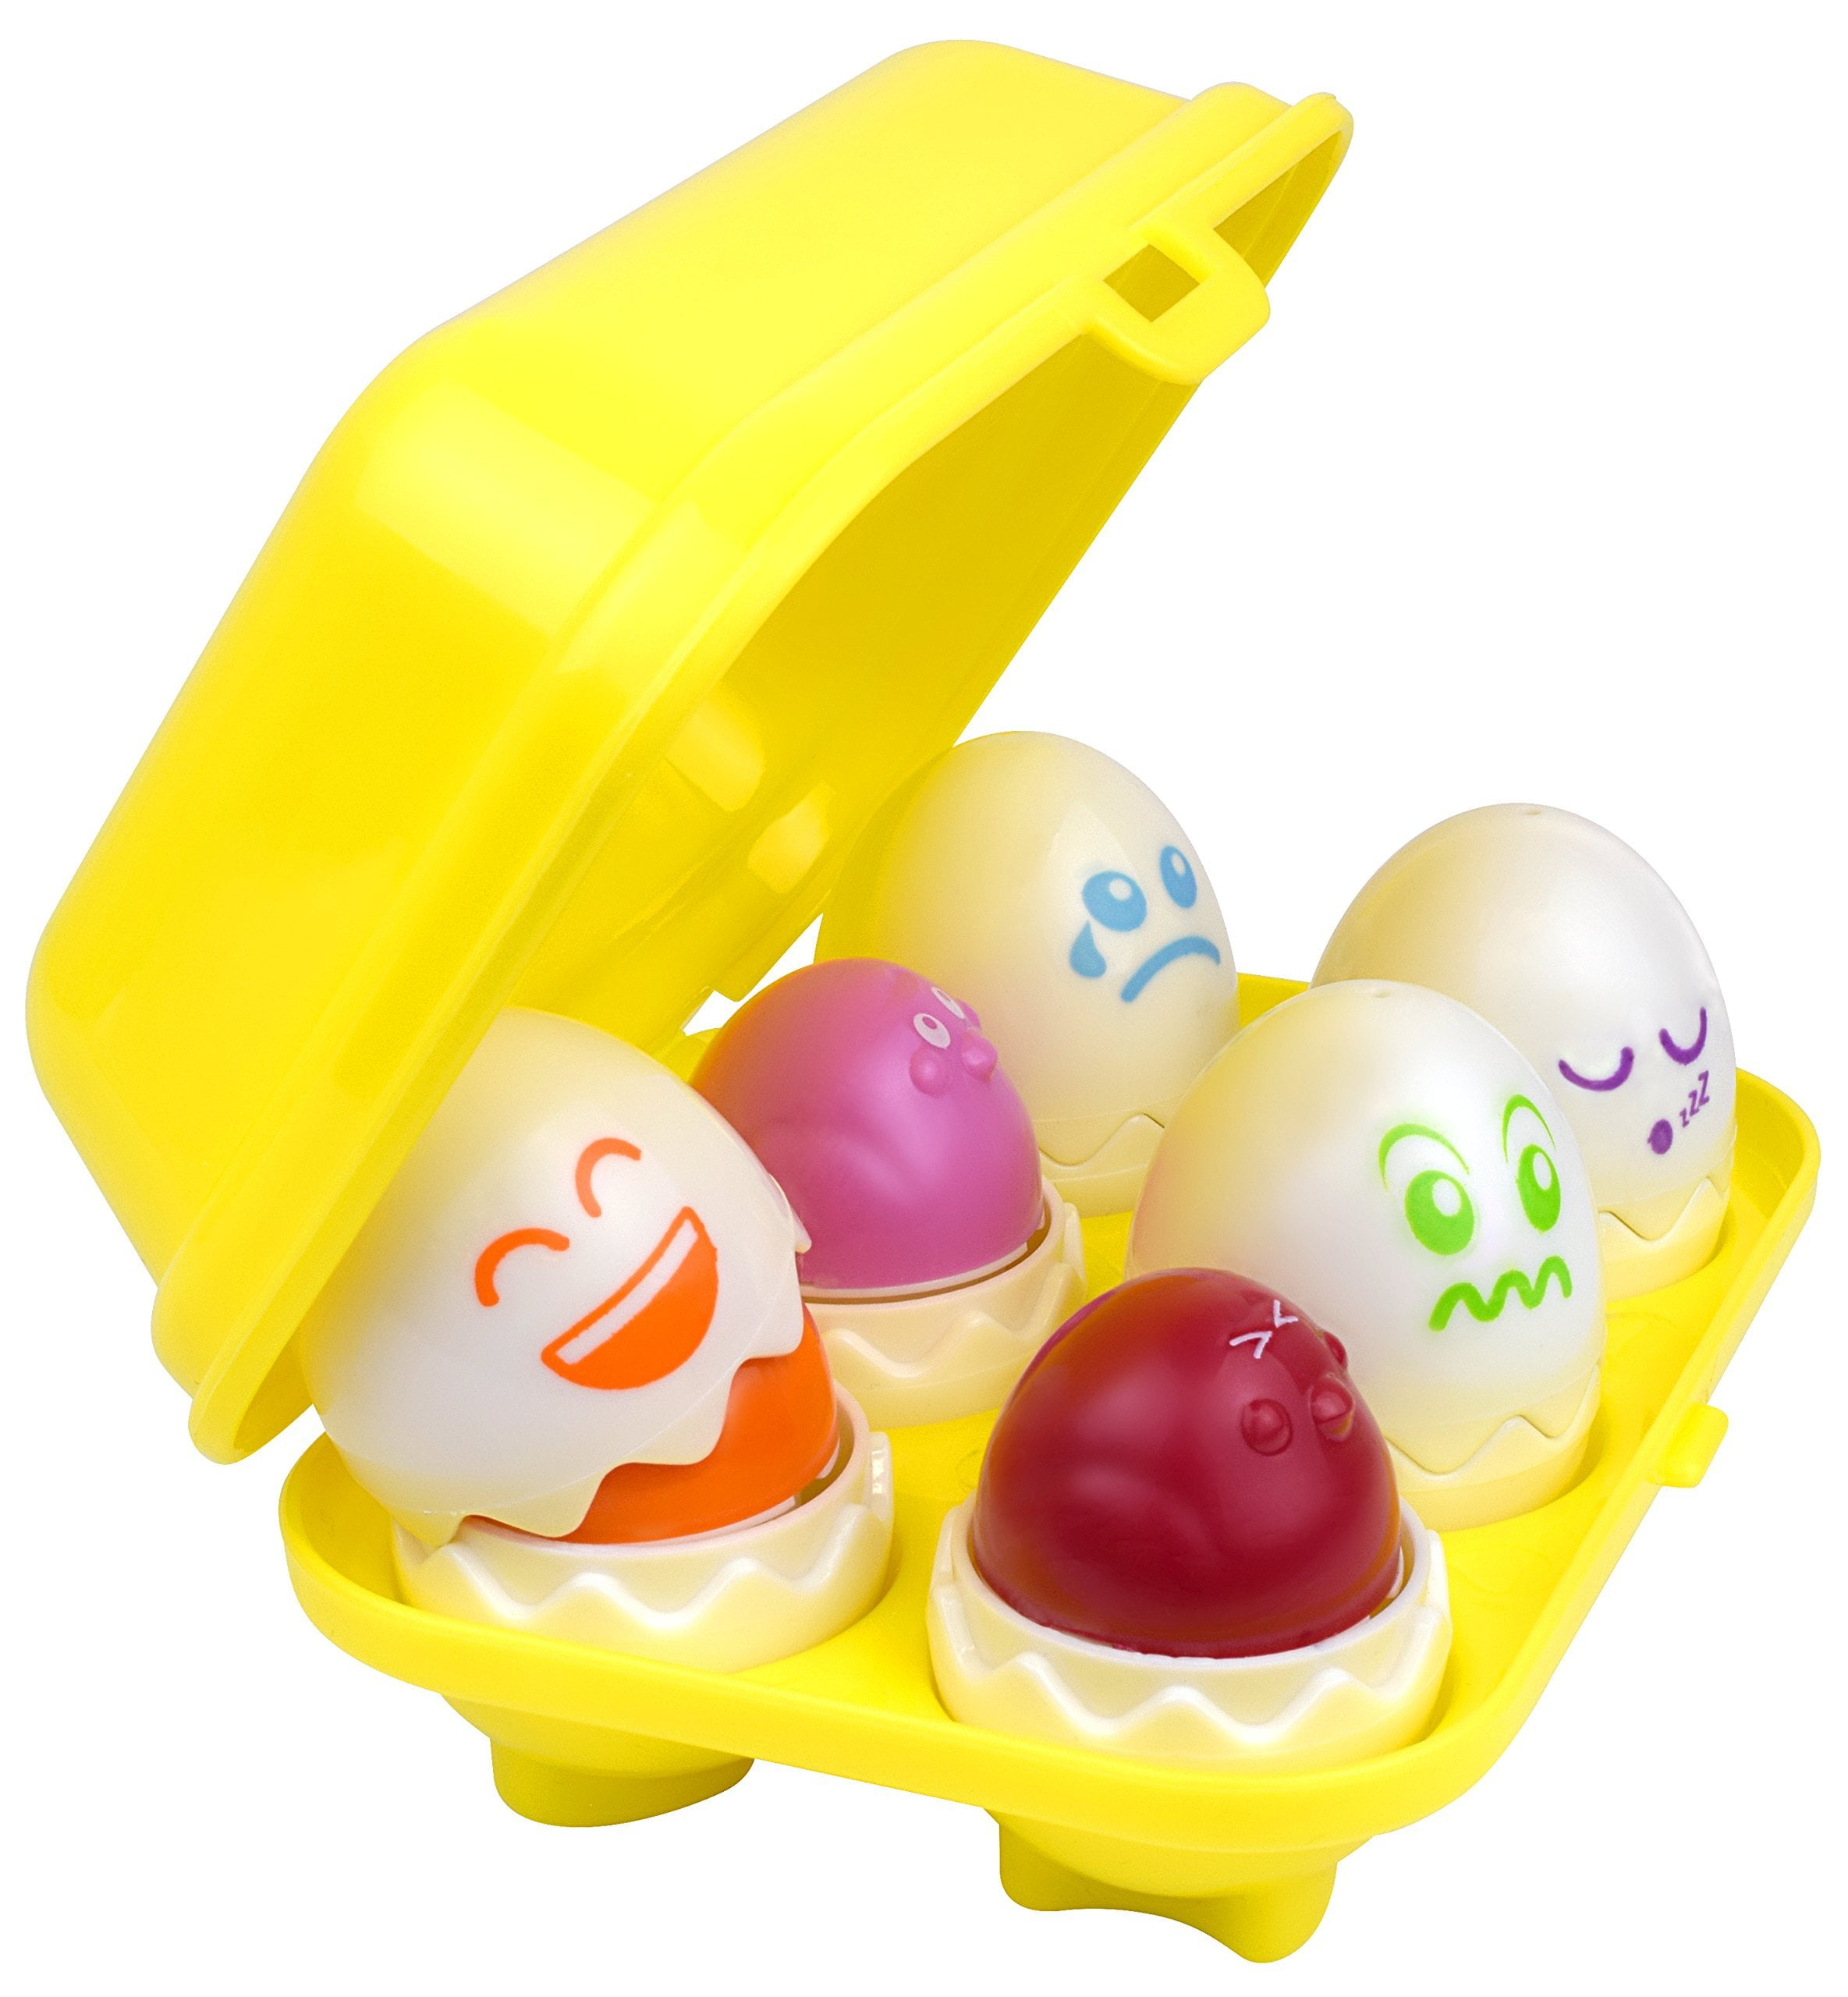 Hide N' Tweet Eggs; Chirping Squeaky Eggs; Educational Toys, Learning